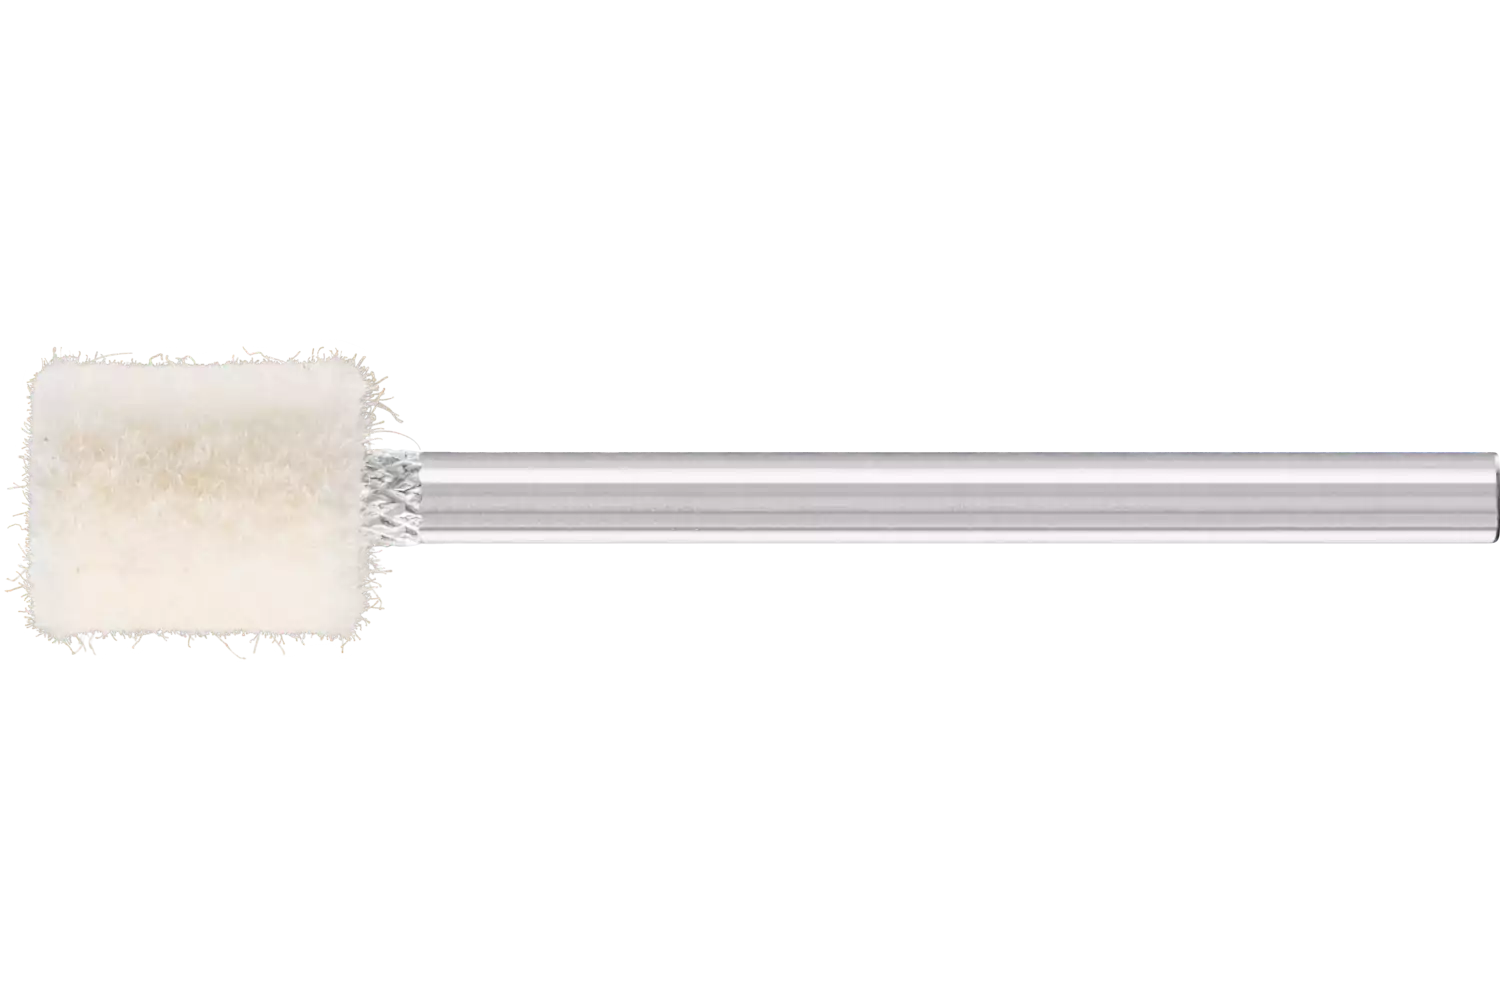 Feltri con gambo per lucidare medio-duri forma cilindrica Ø 8x10 mm, gambo Ø 3 mm 1